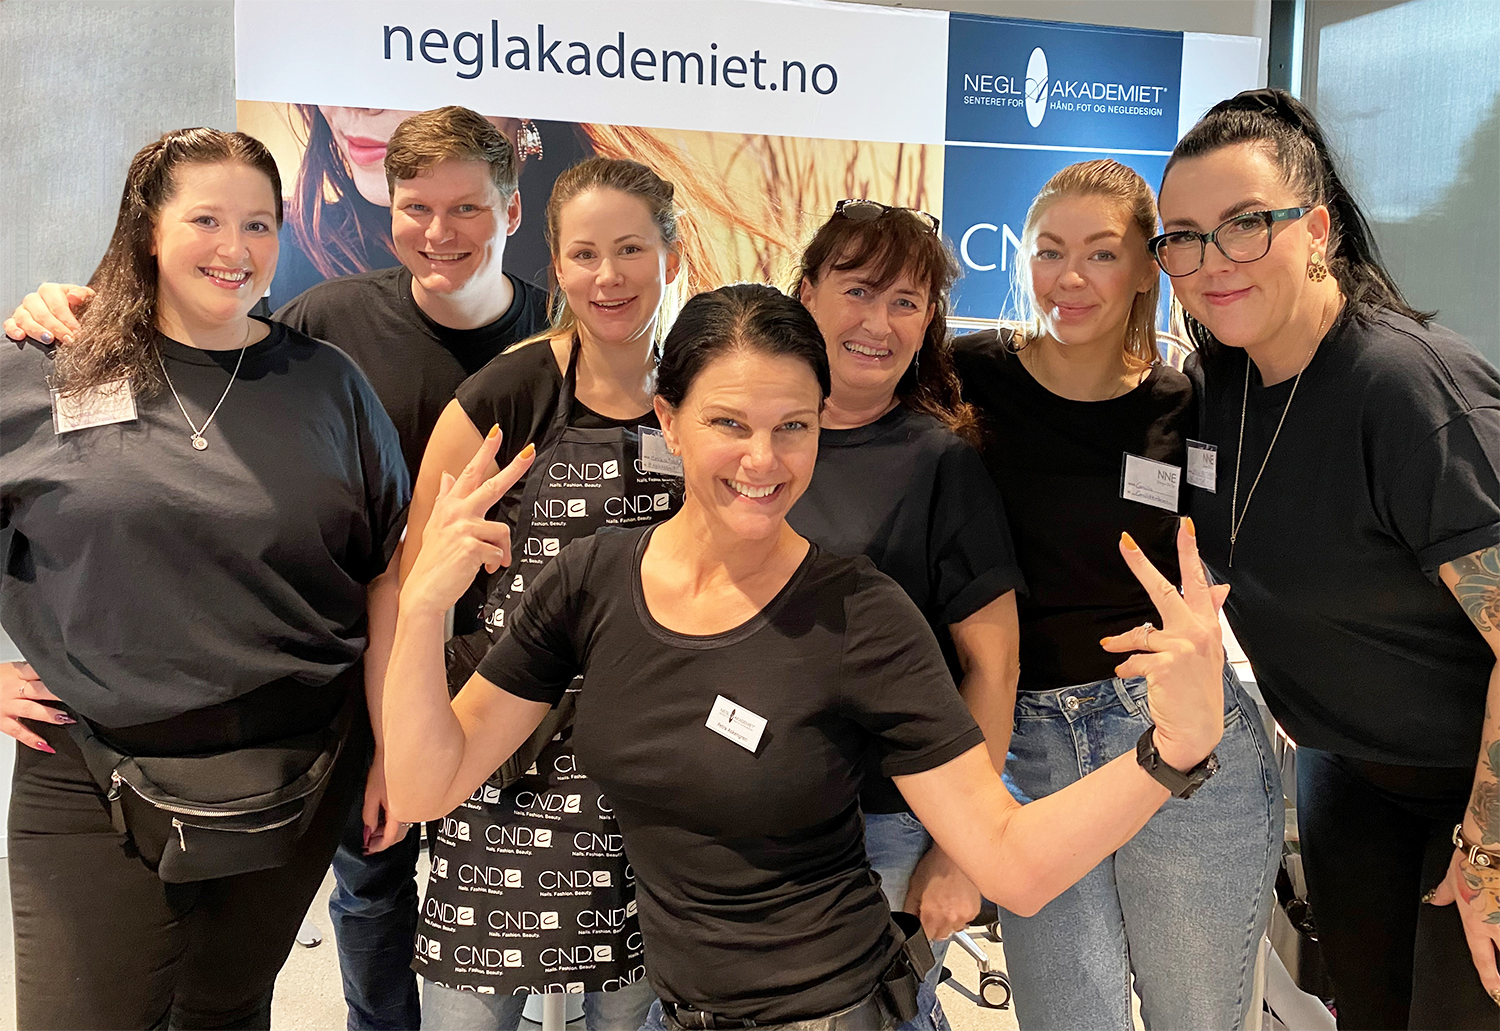 NeglAkademiet gjestet Norwegian Nail Expo